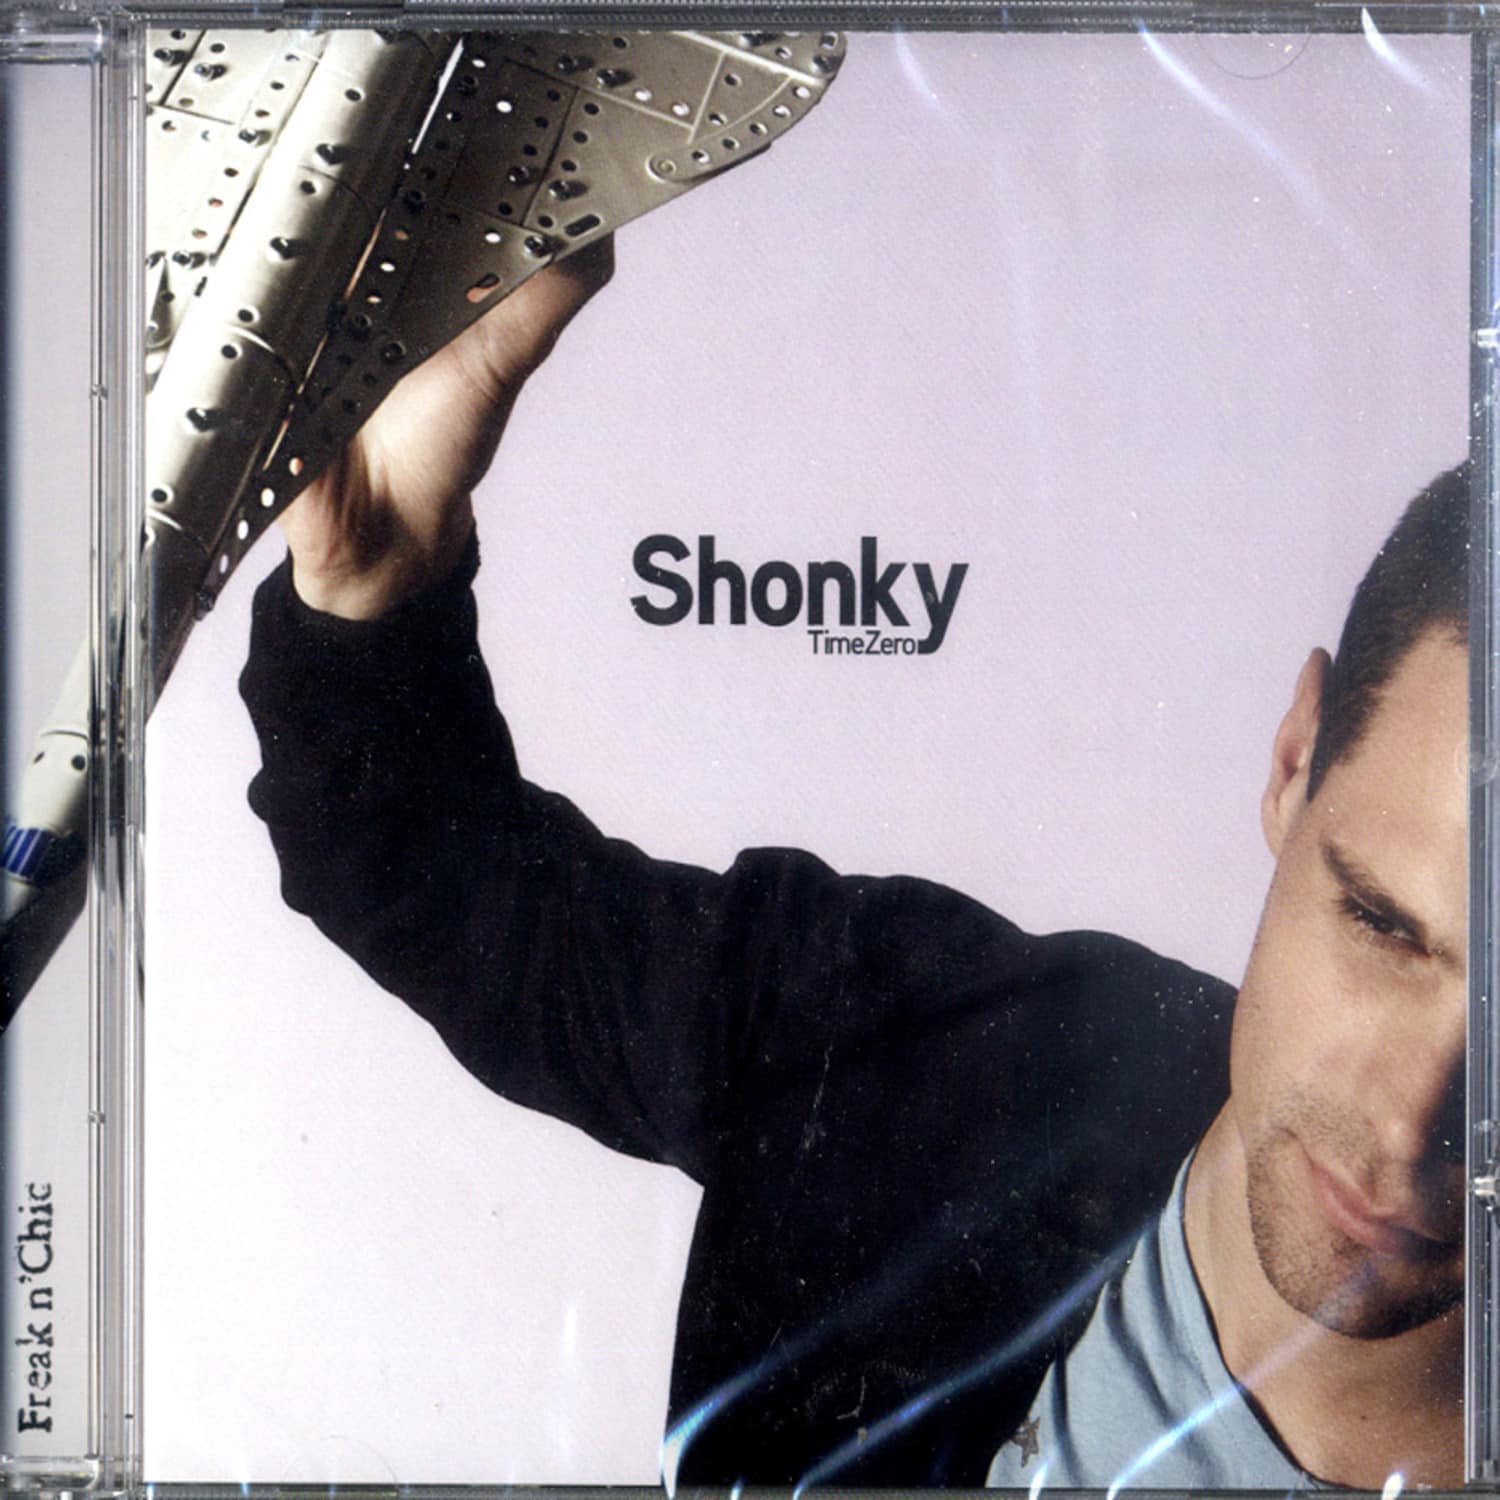 Shonky - TIME ZERO 